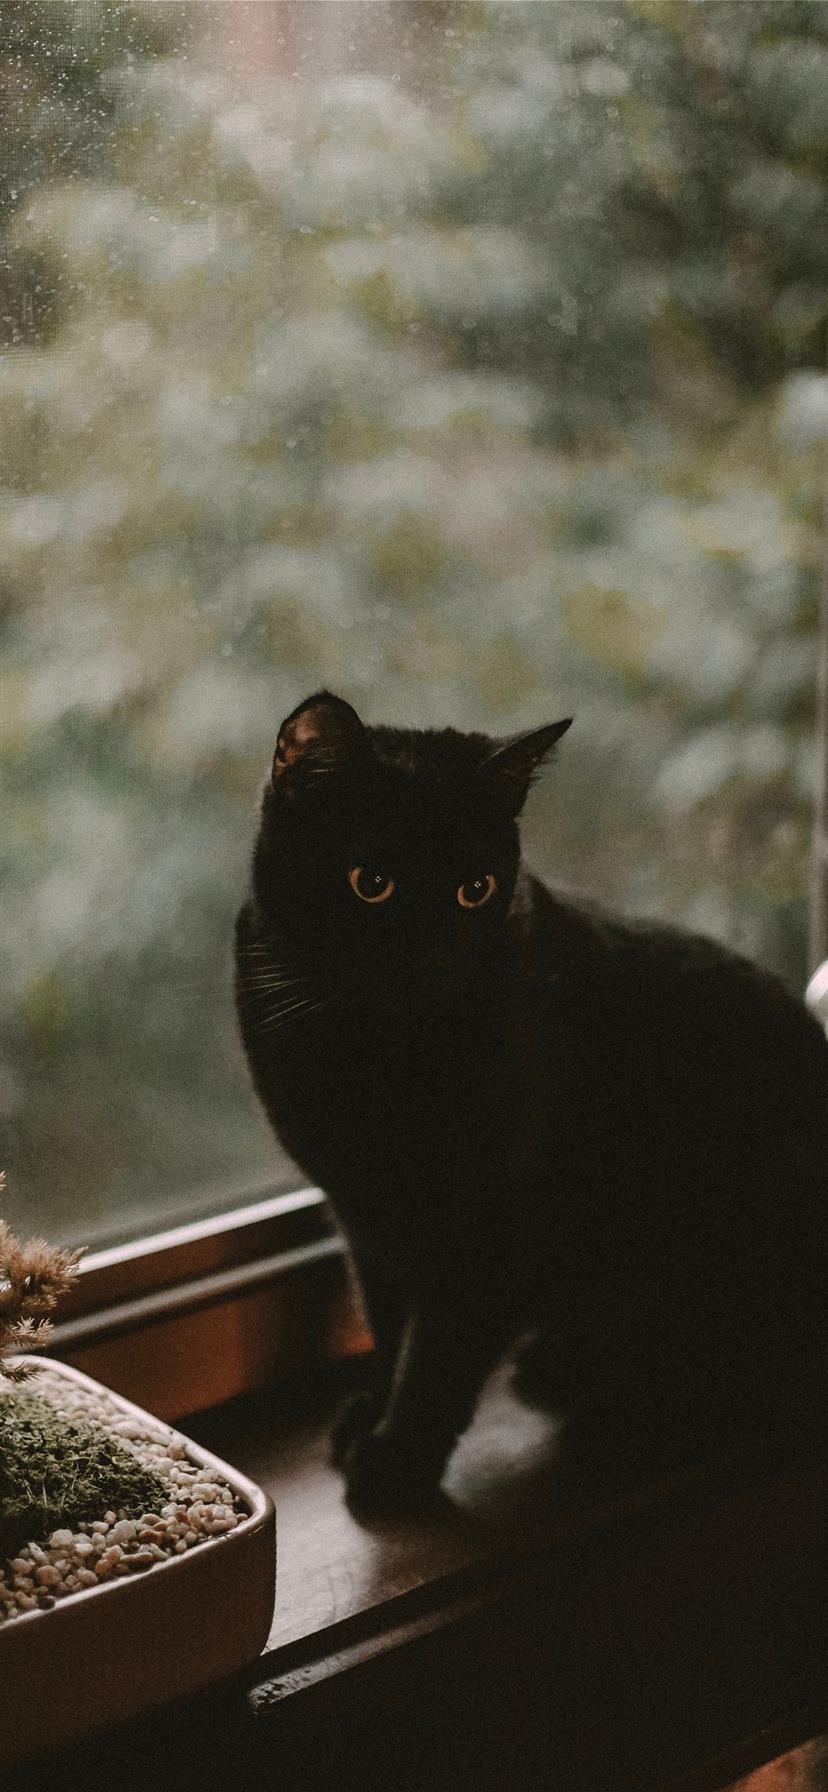 Download Trick Or Treat Black Cat Animal RoyaltyFree Stock Illustration  Image  Pixabay